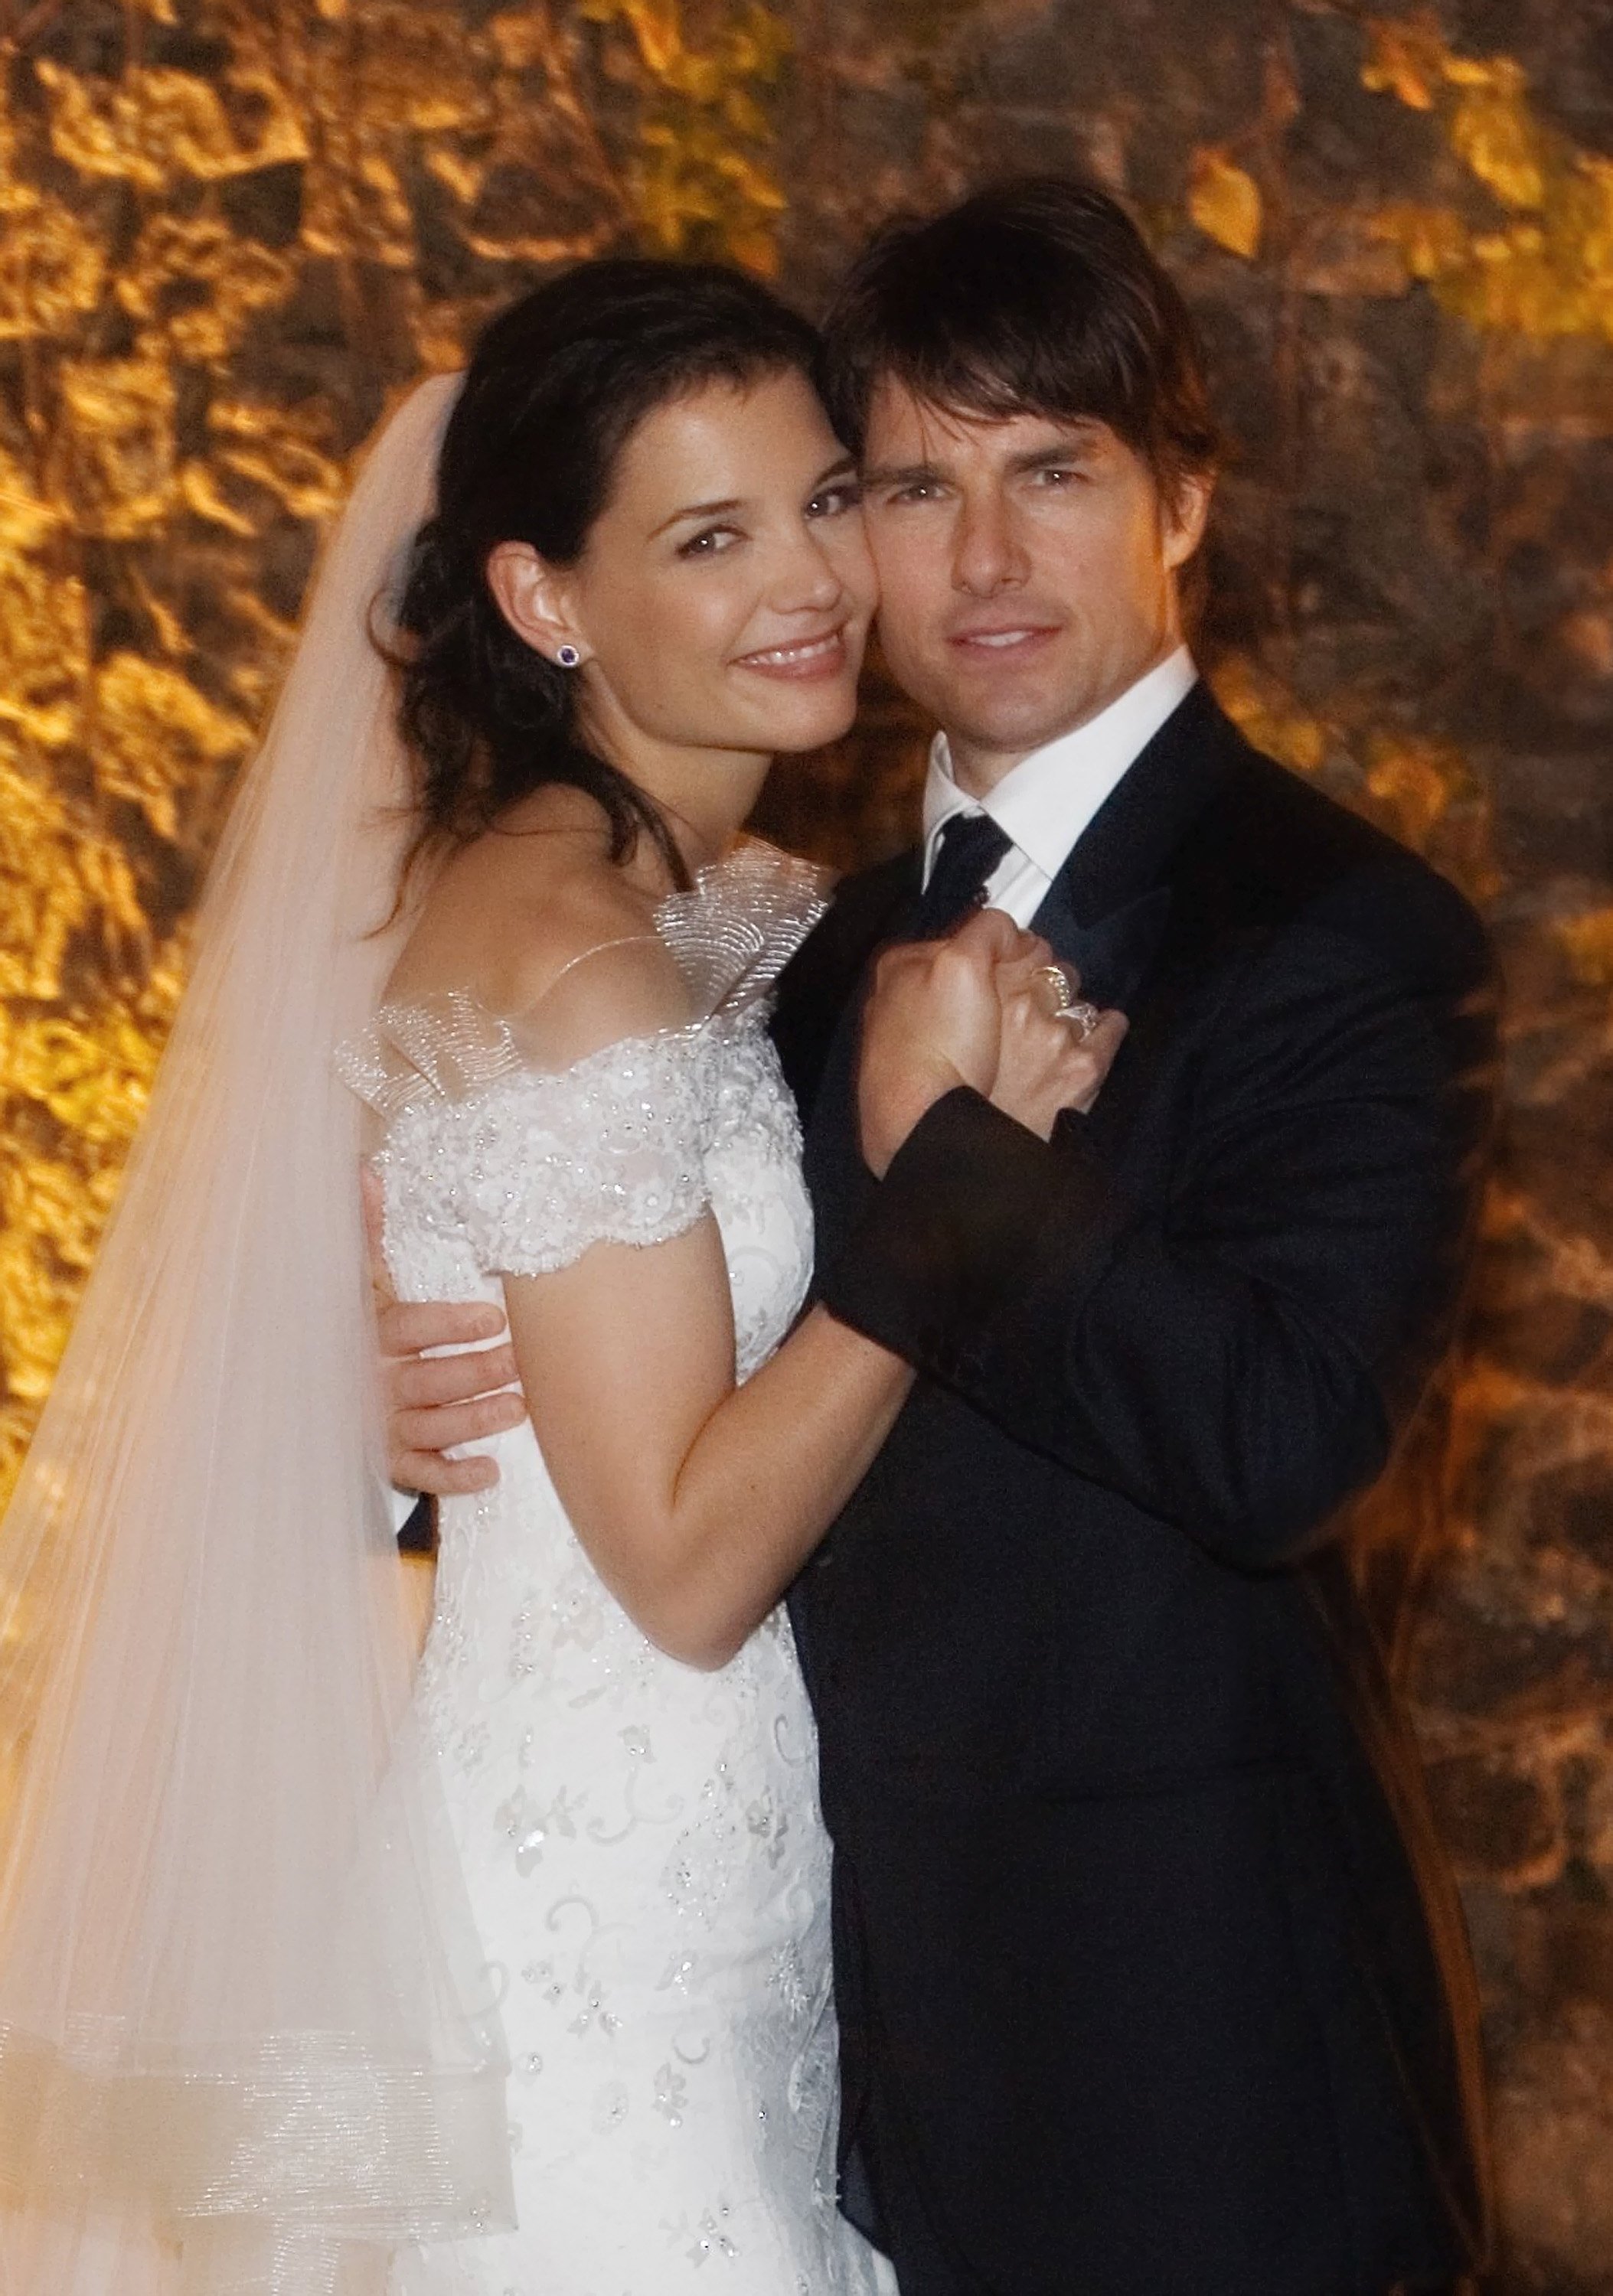 Tom Cruise y Katie Holmes posan juntos en el Castello Odescalchi el día de su boda el 18 de noviembre de 2006 en Bracciano, cerca de Roma, Italia. | Foto: Getty Images 